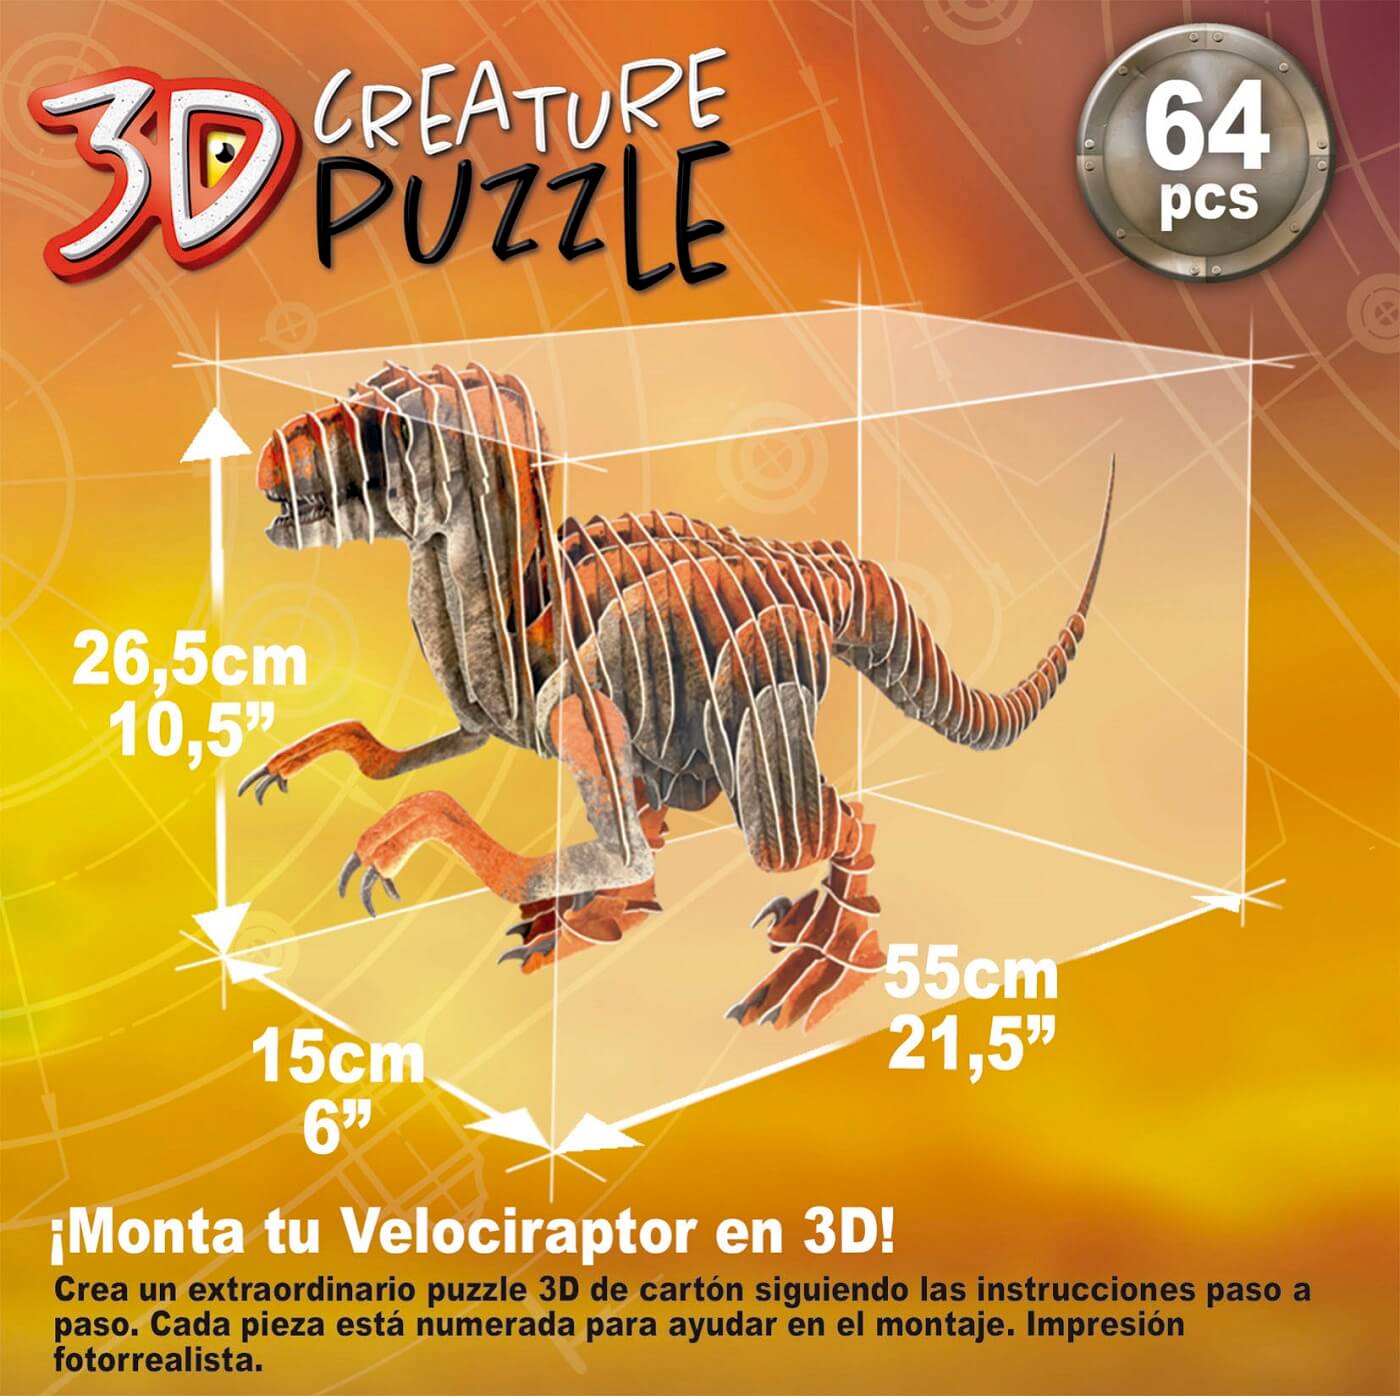 Velociraptor 3D Creature Puzzle ( Educa 19382 ) imagen c